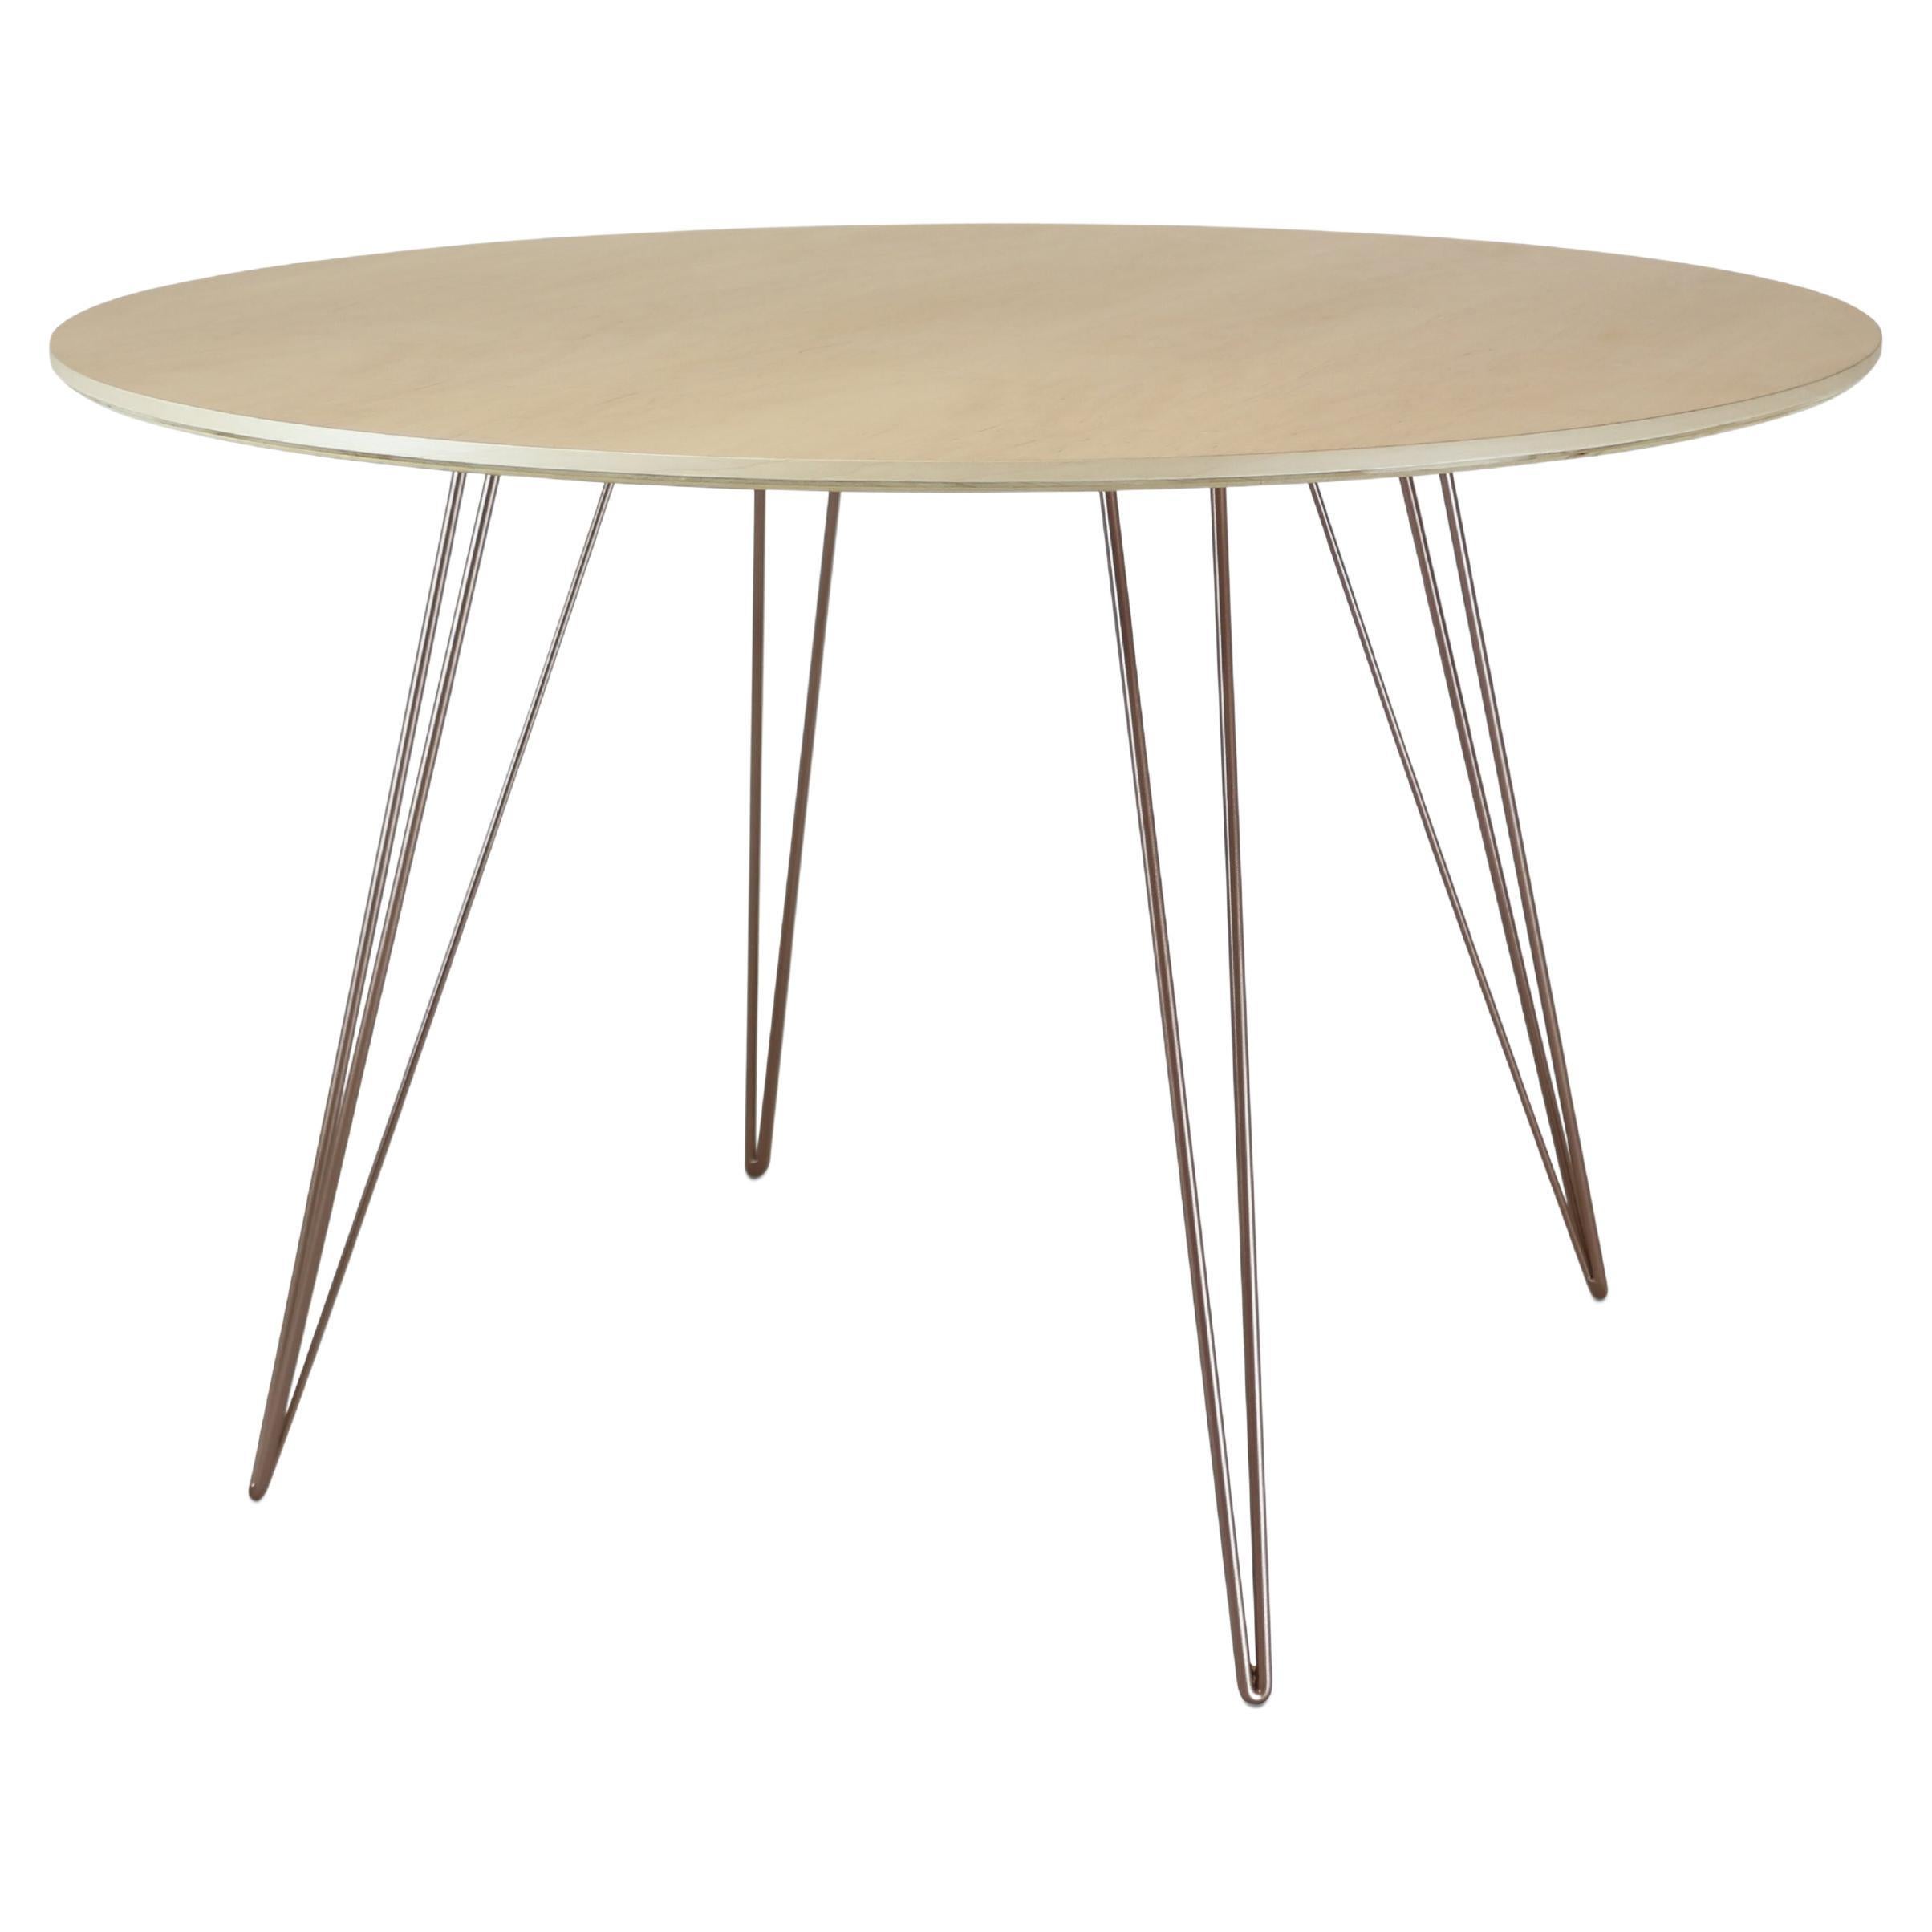 Table de salle à manger Maple Williams avec pieds en épingle à cheveux en cuivre rose, plateau en forme de cercle en vente